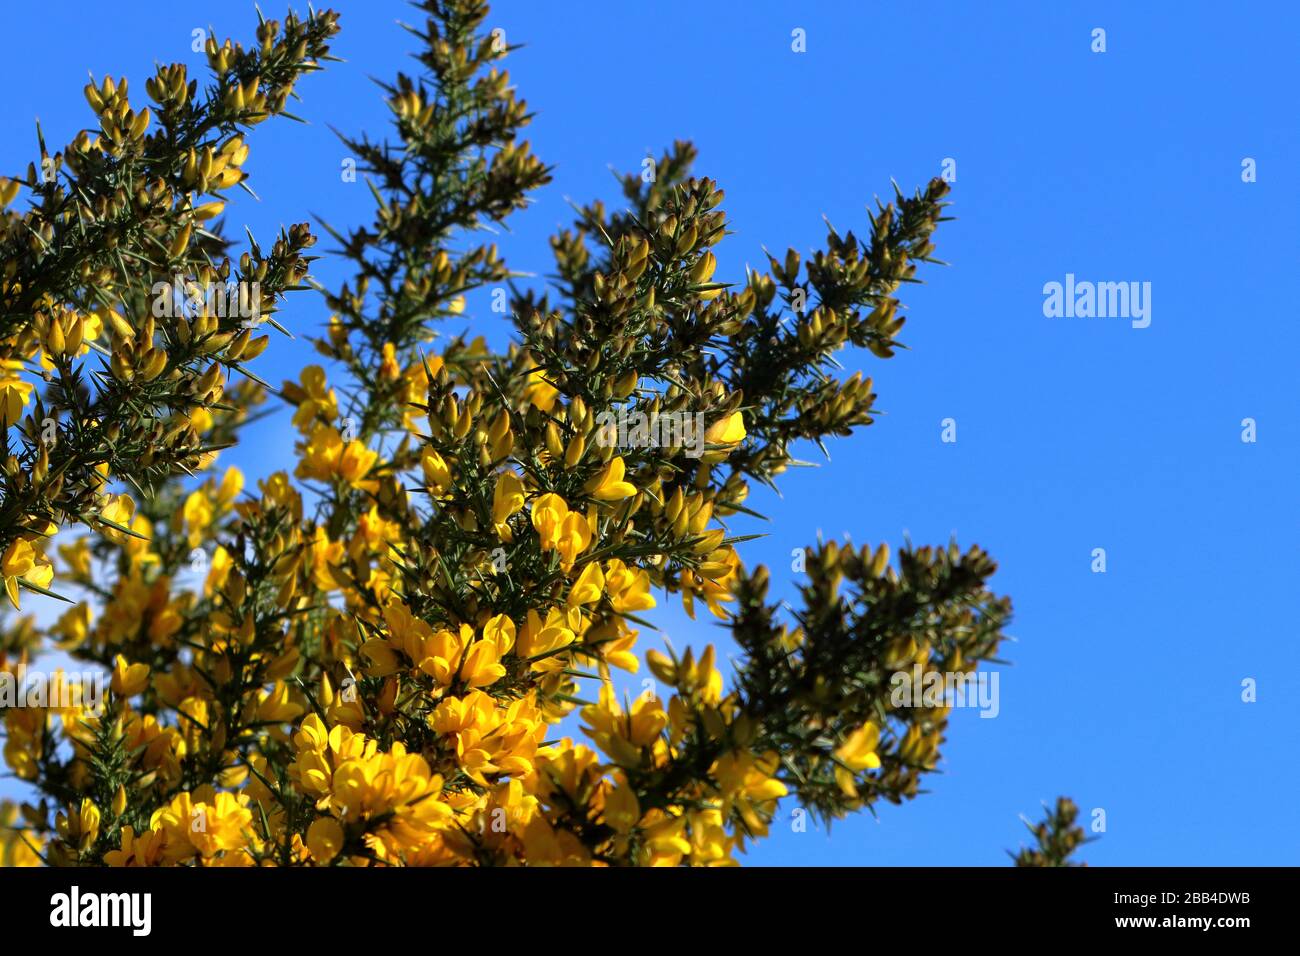 Gorse commun (Ulex europaeus) en fleur contre un ciel bleu Banque D'Images